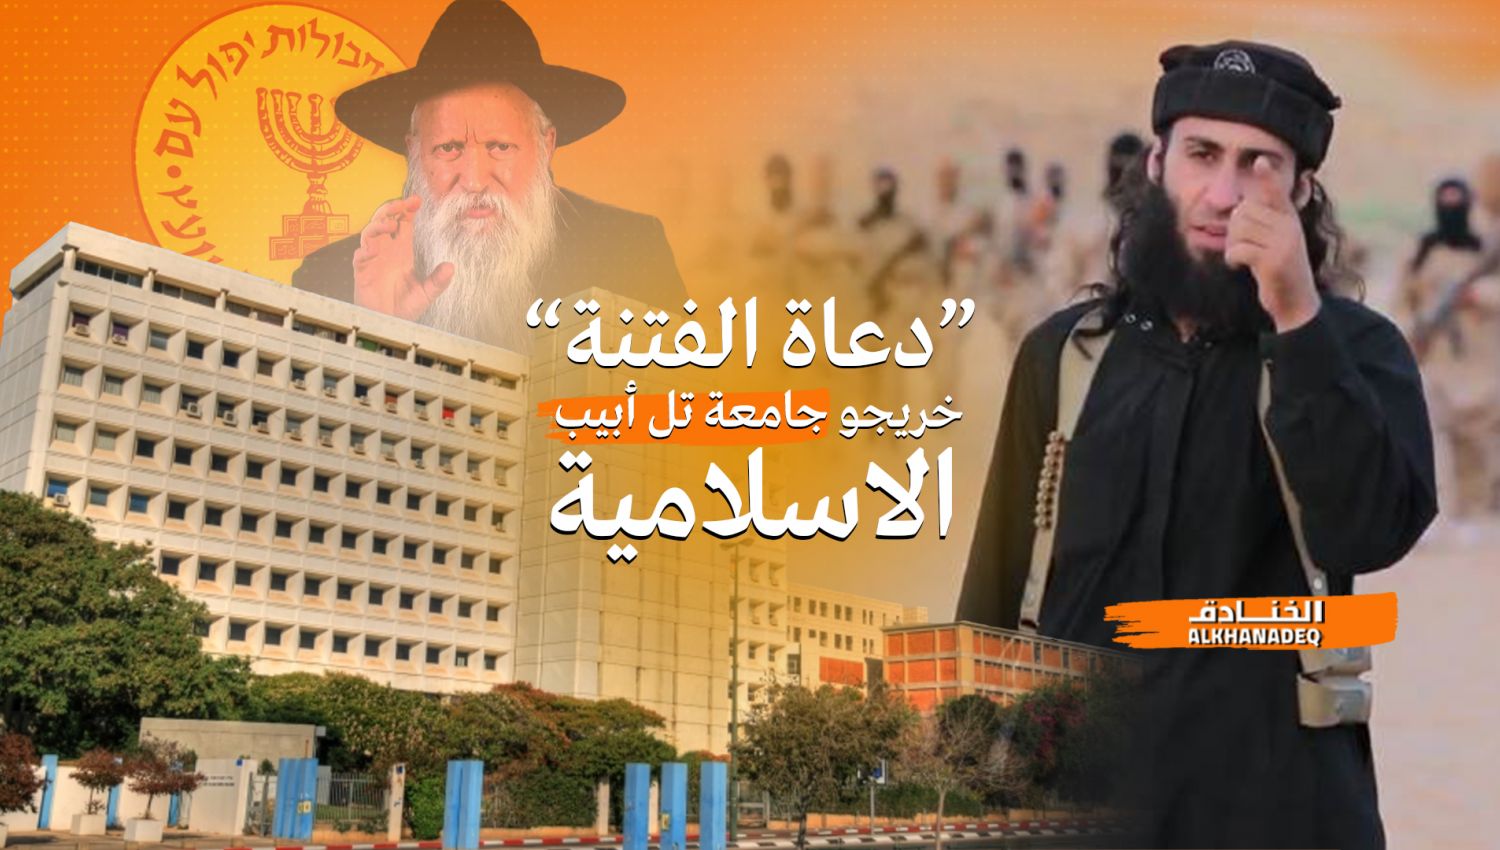 جامعة تل أبيب الإسلامية: الموساد يخرّج "دعاة إسلاميين" 